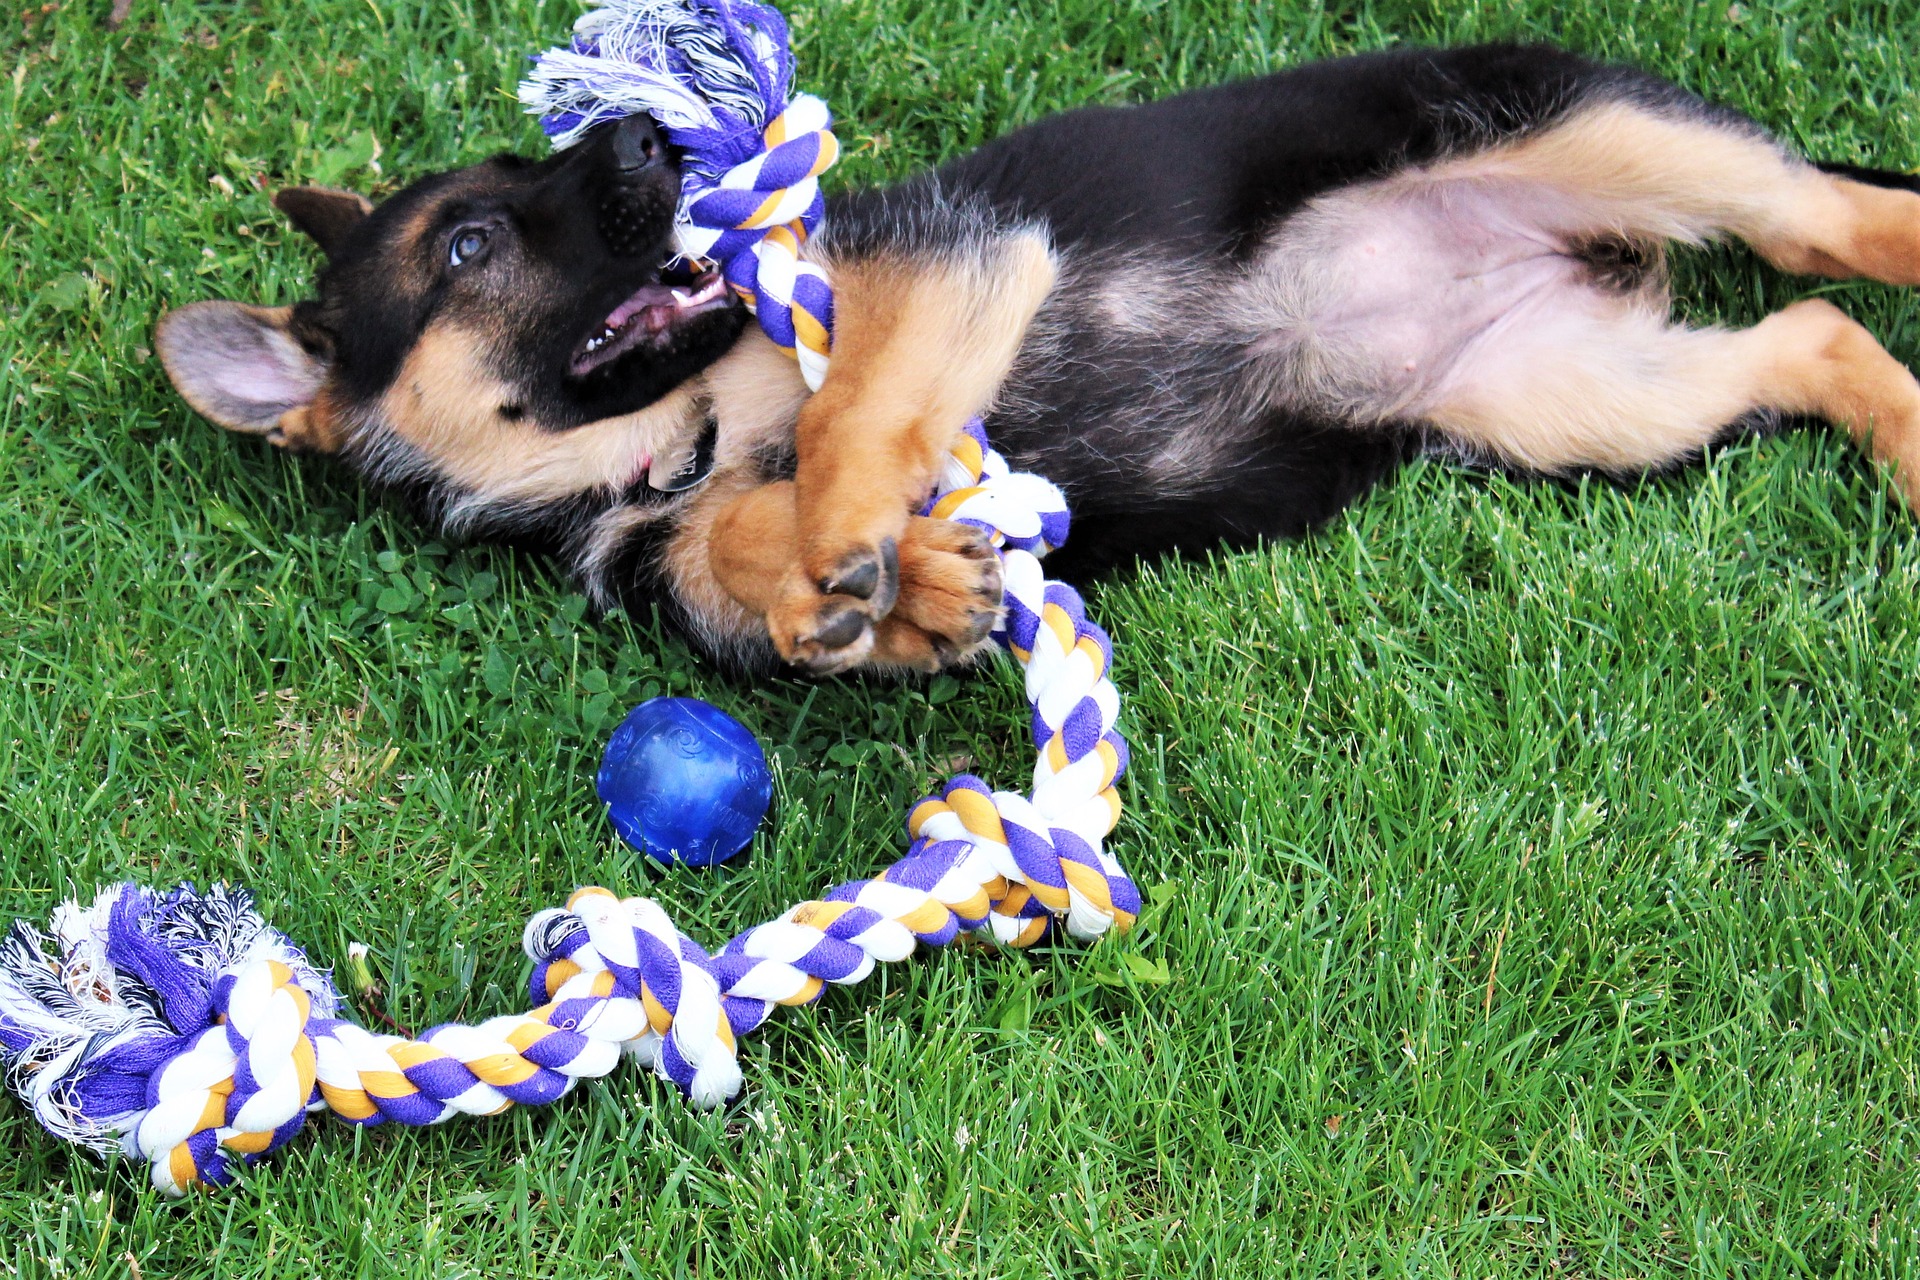 Spielseile helfen dabei, eine Verbindung zwischen dem Hundeführer und dem Hund herzustellen. Spaß zusammen zu haben ist eine tolle Zeit.